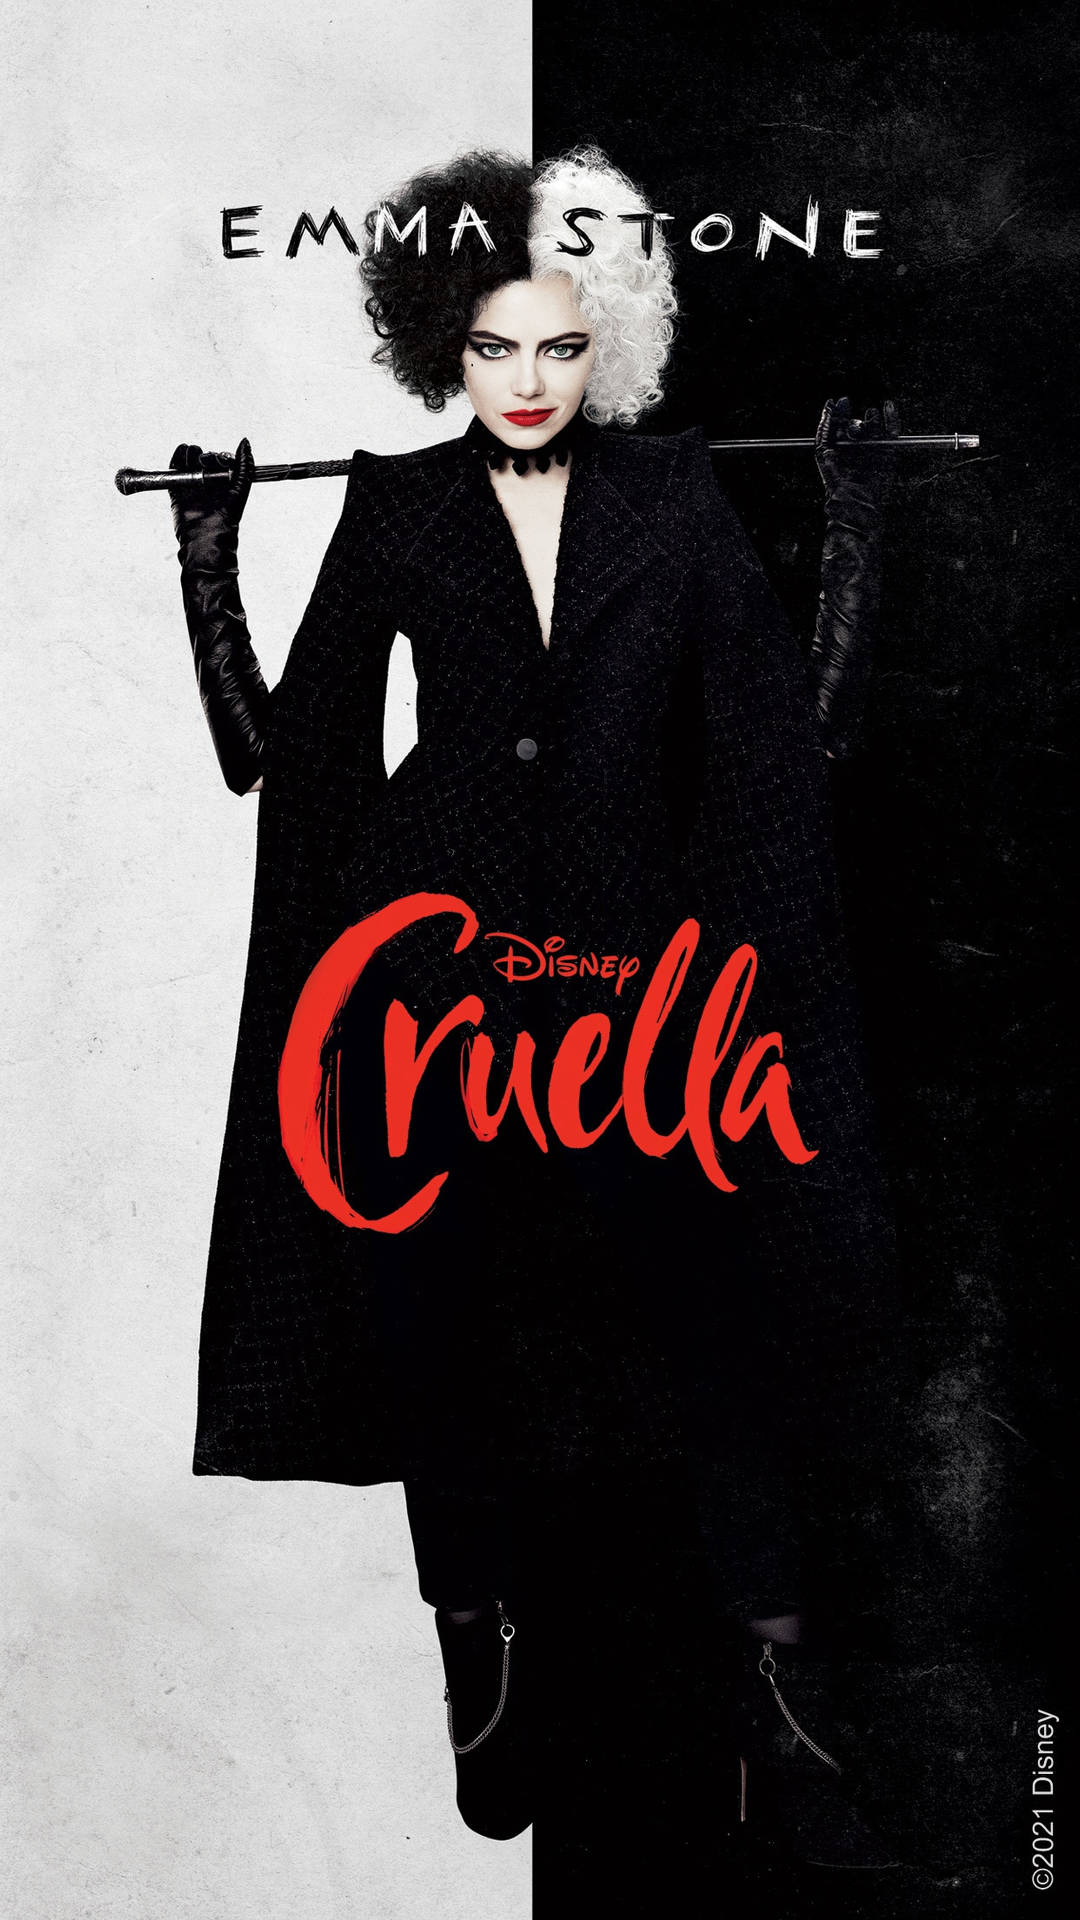 Emma Stone As Disney's Cruella 2021